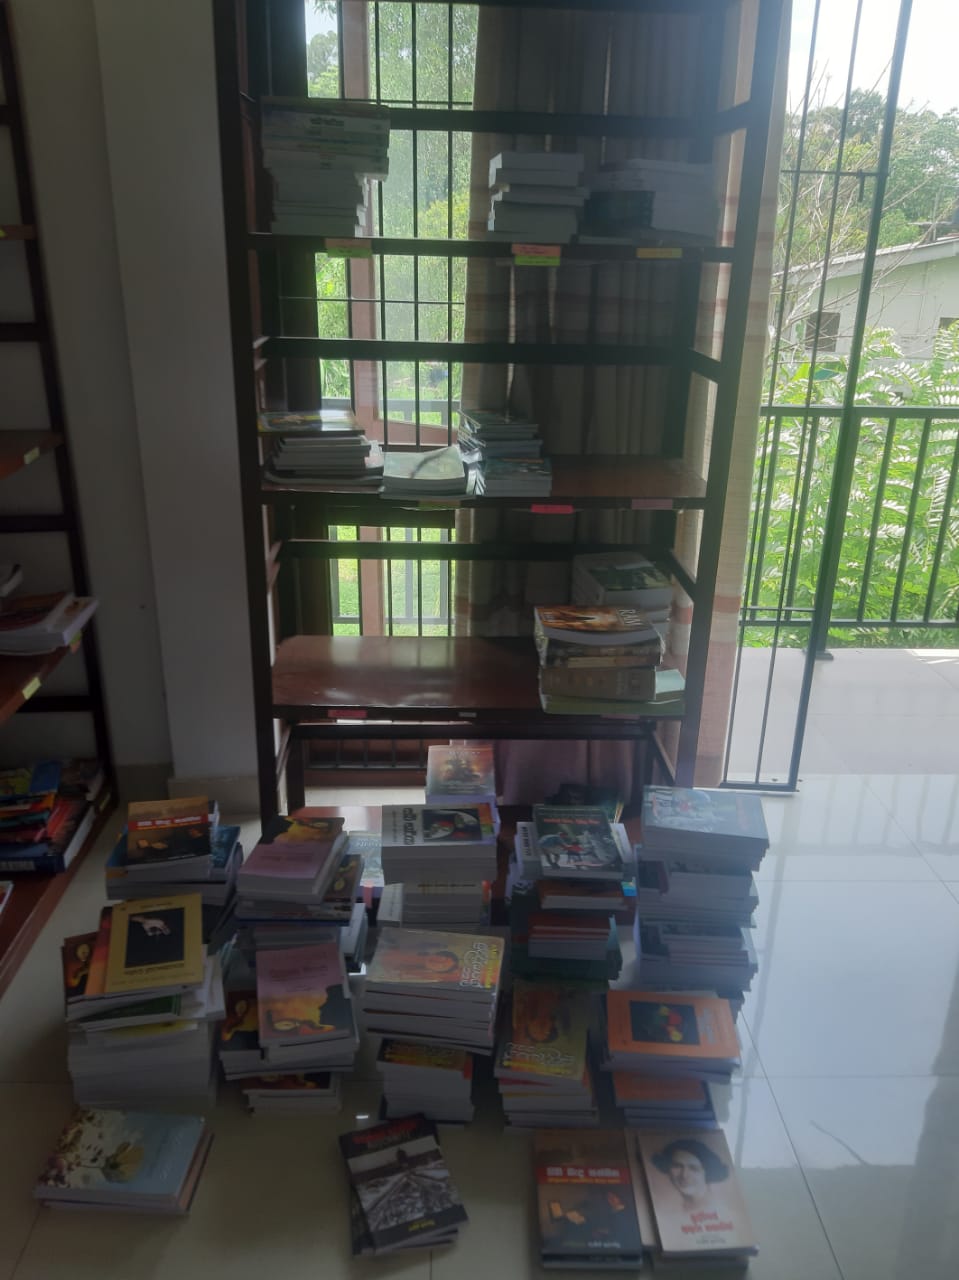 Colombo Bookshop (pvt) Ltd